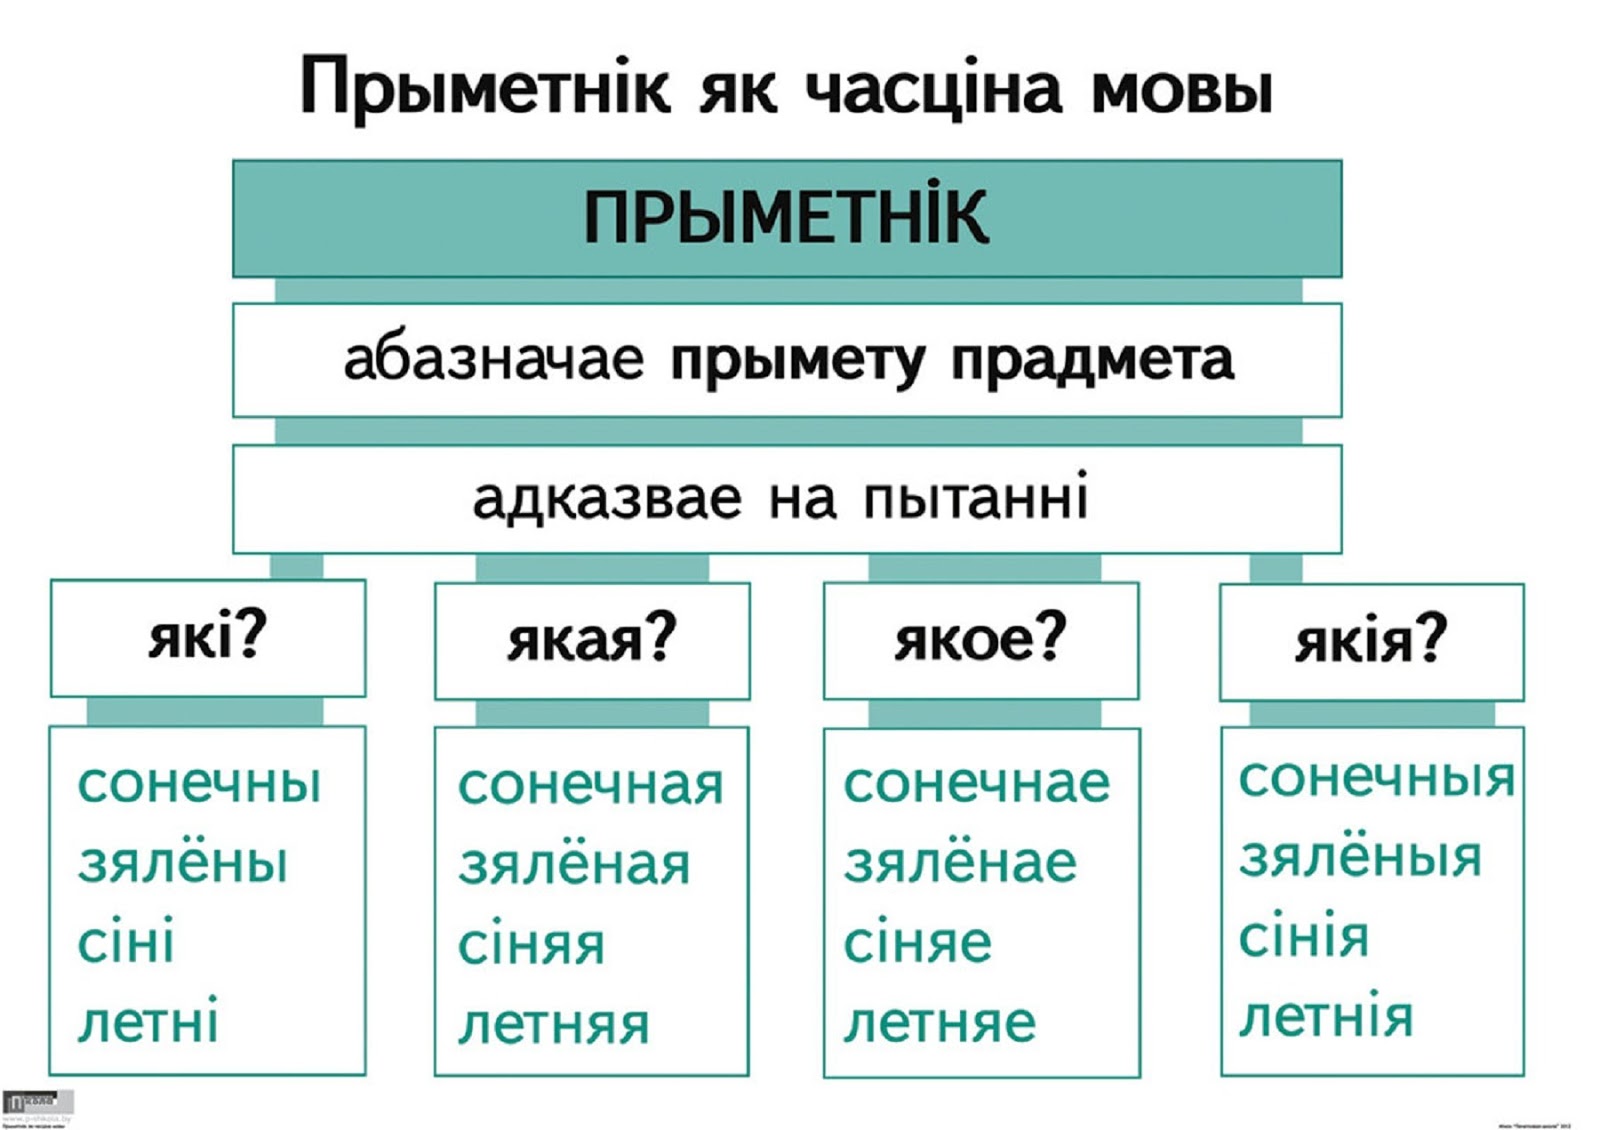 члены сказа в белорусском языке фото 19